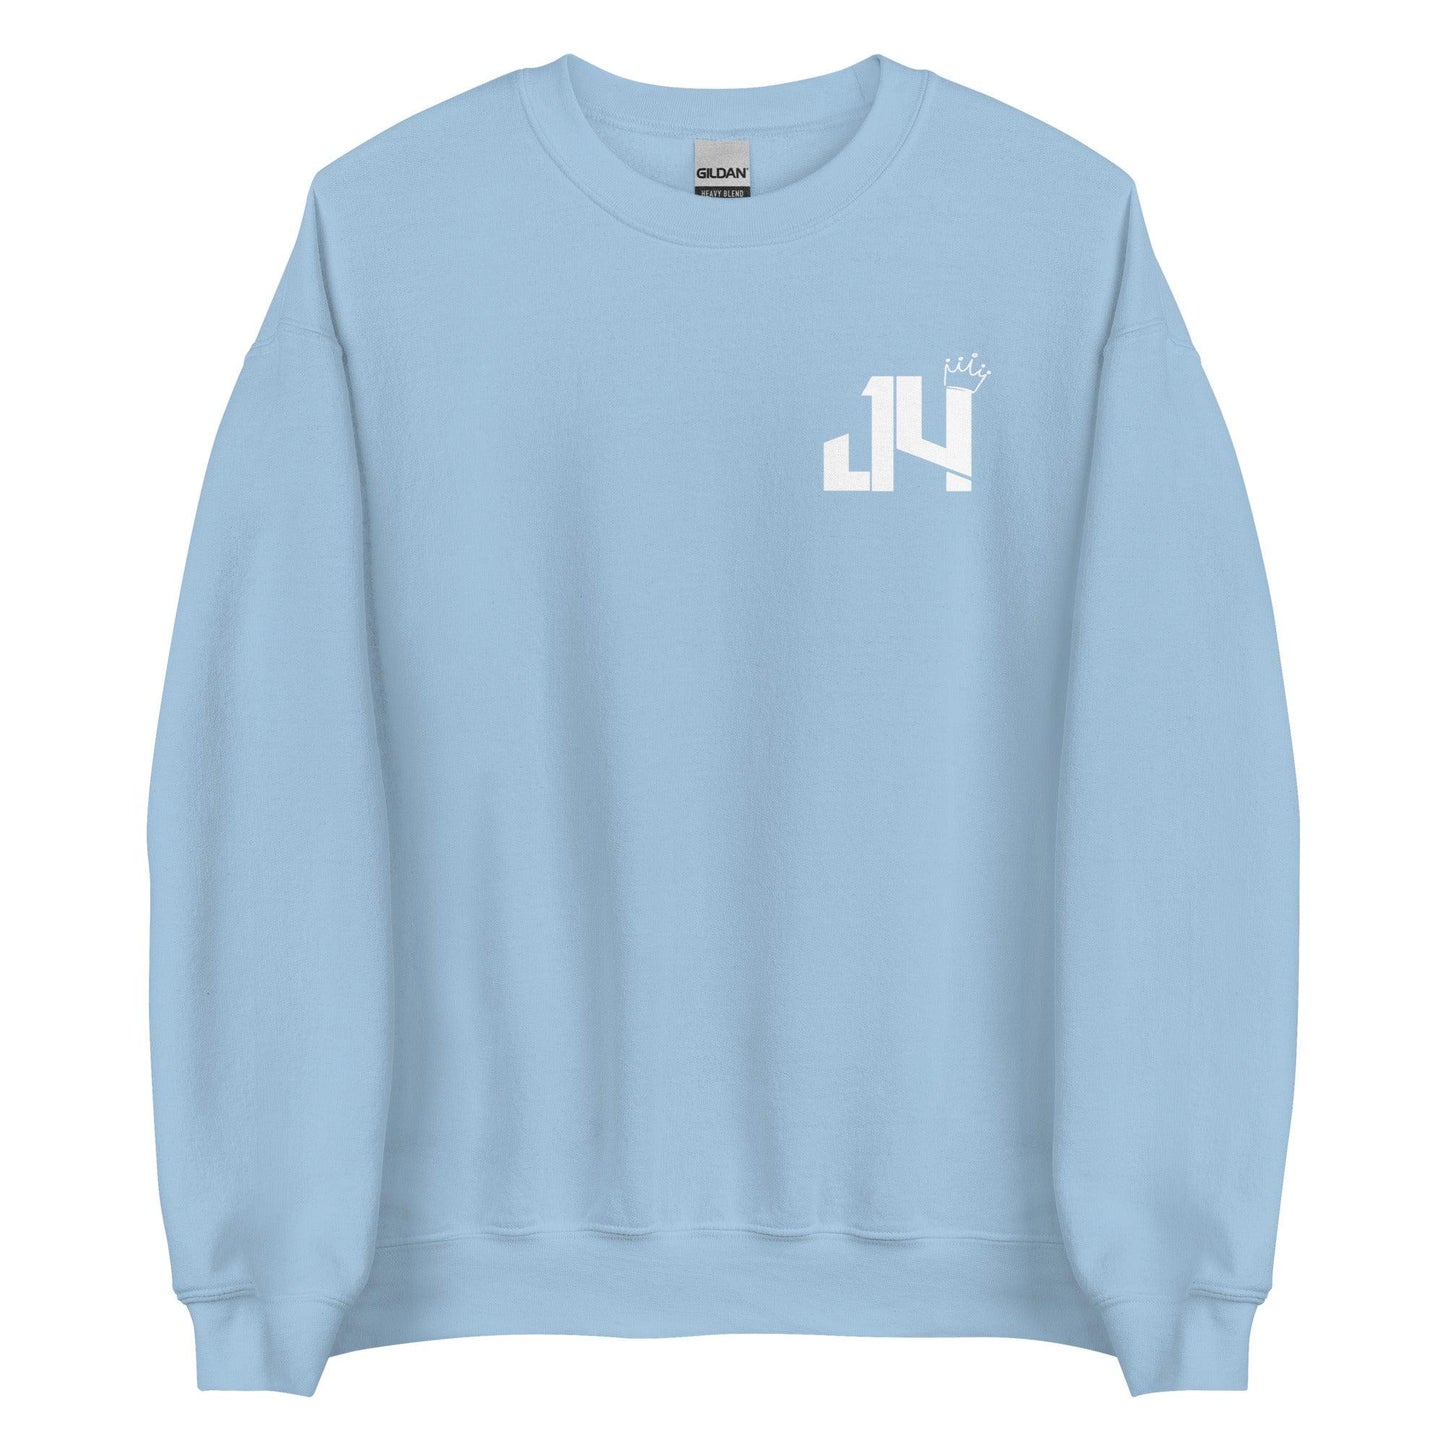 Jeff Foreman "Essential" Sweatshirt - Fan Arch